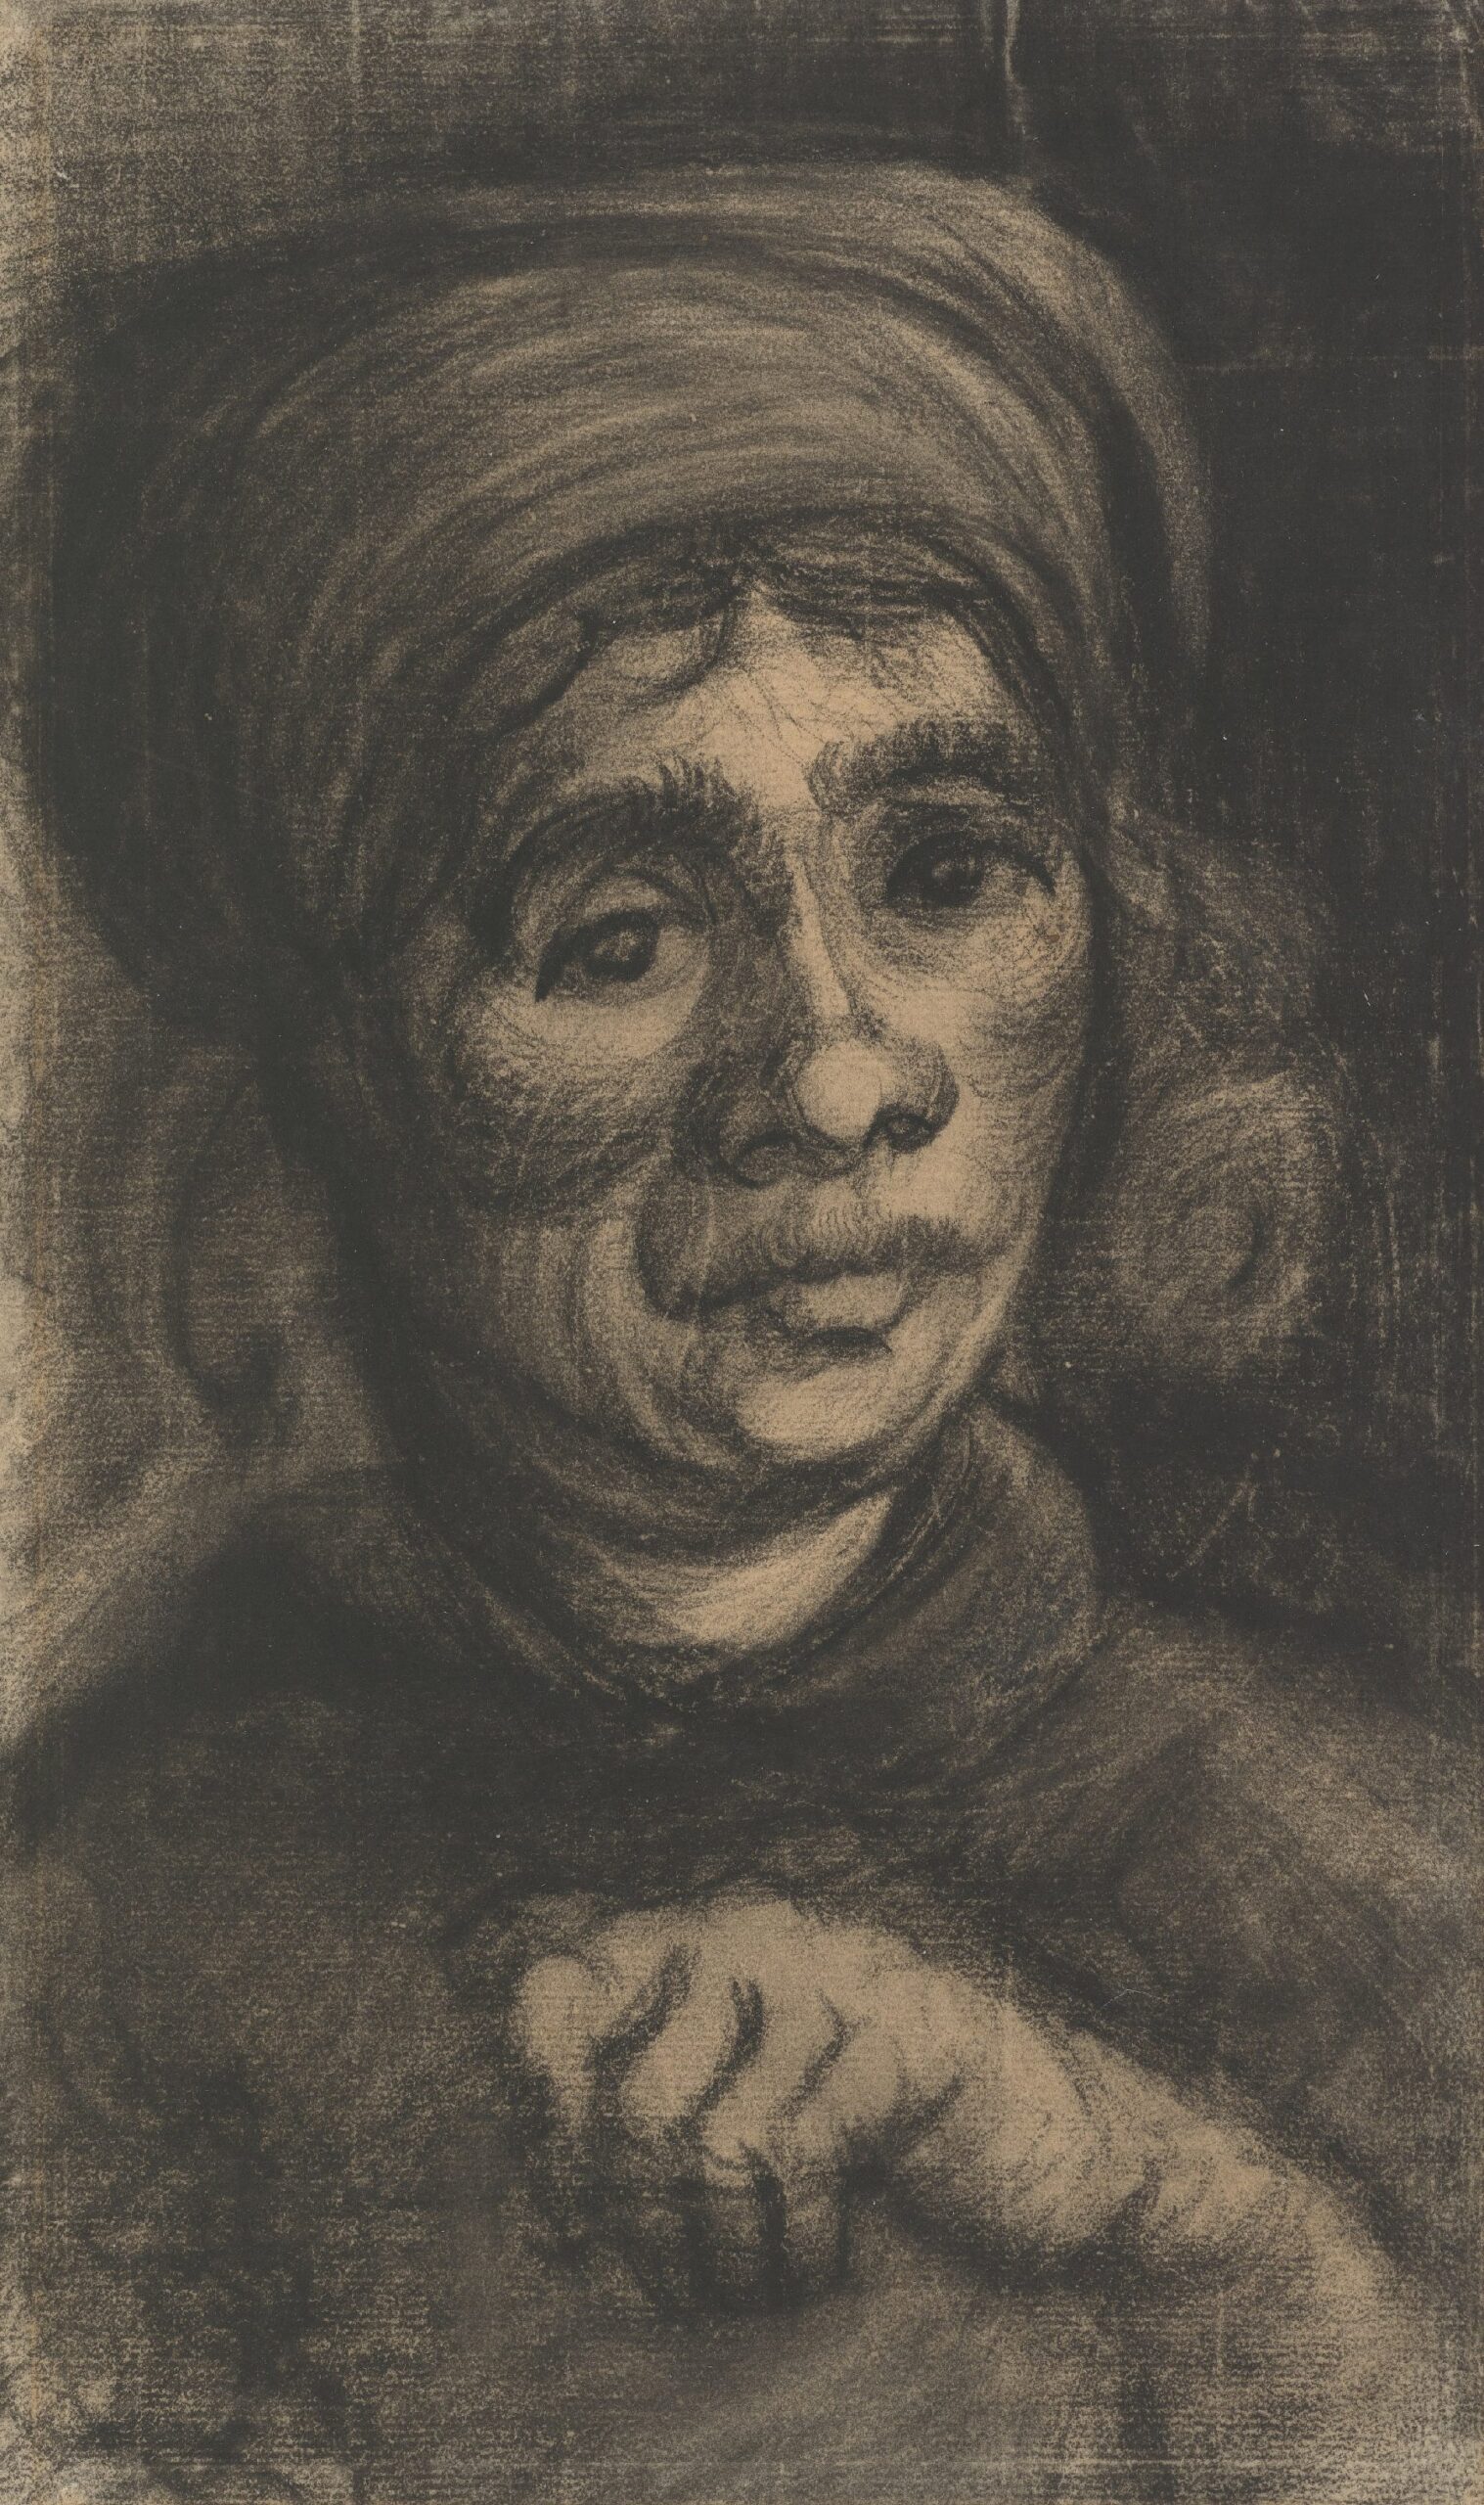 Kop van een vrouw Vincent van Gogh (1853 - 1890), Nuenen, december 1884-mei 1885